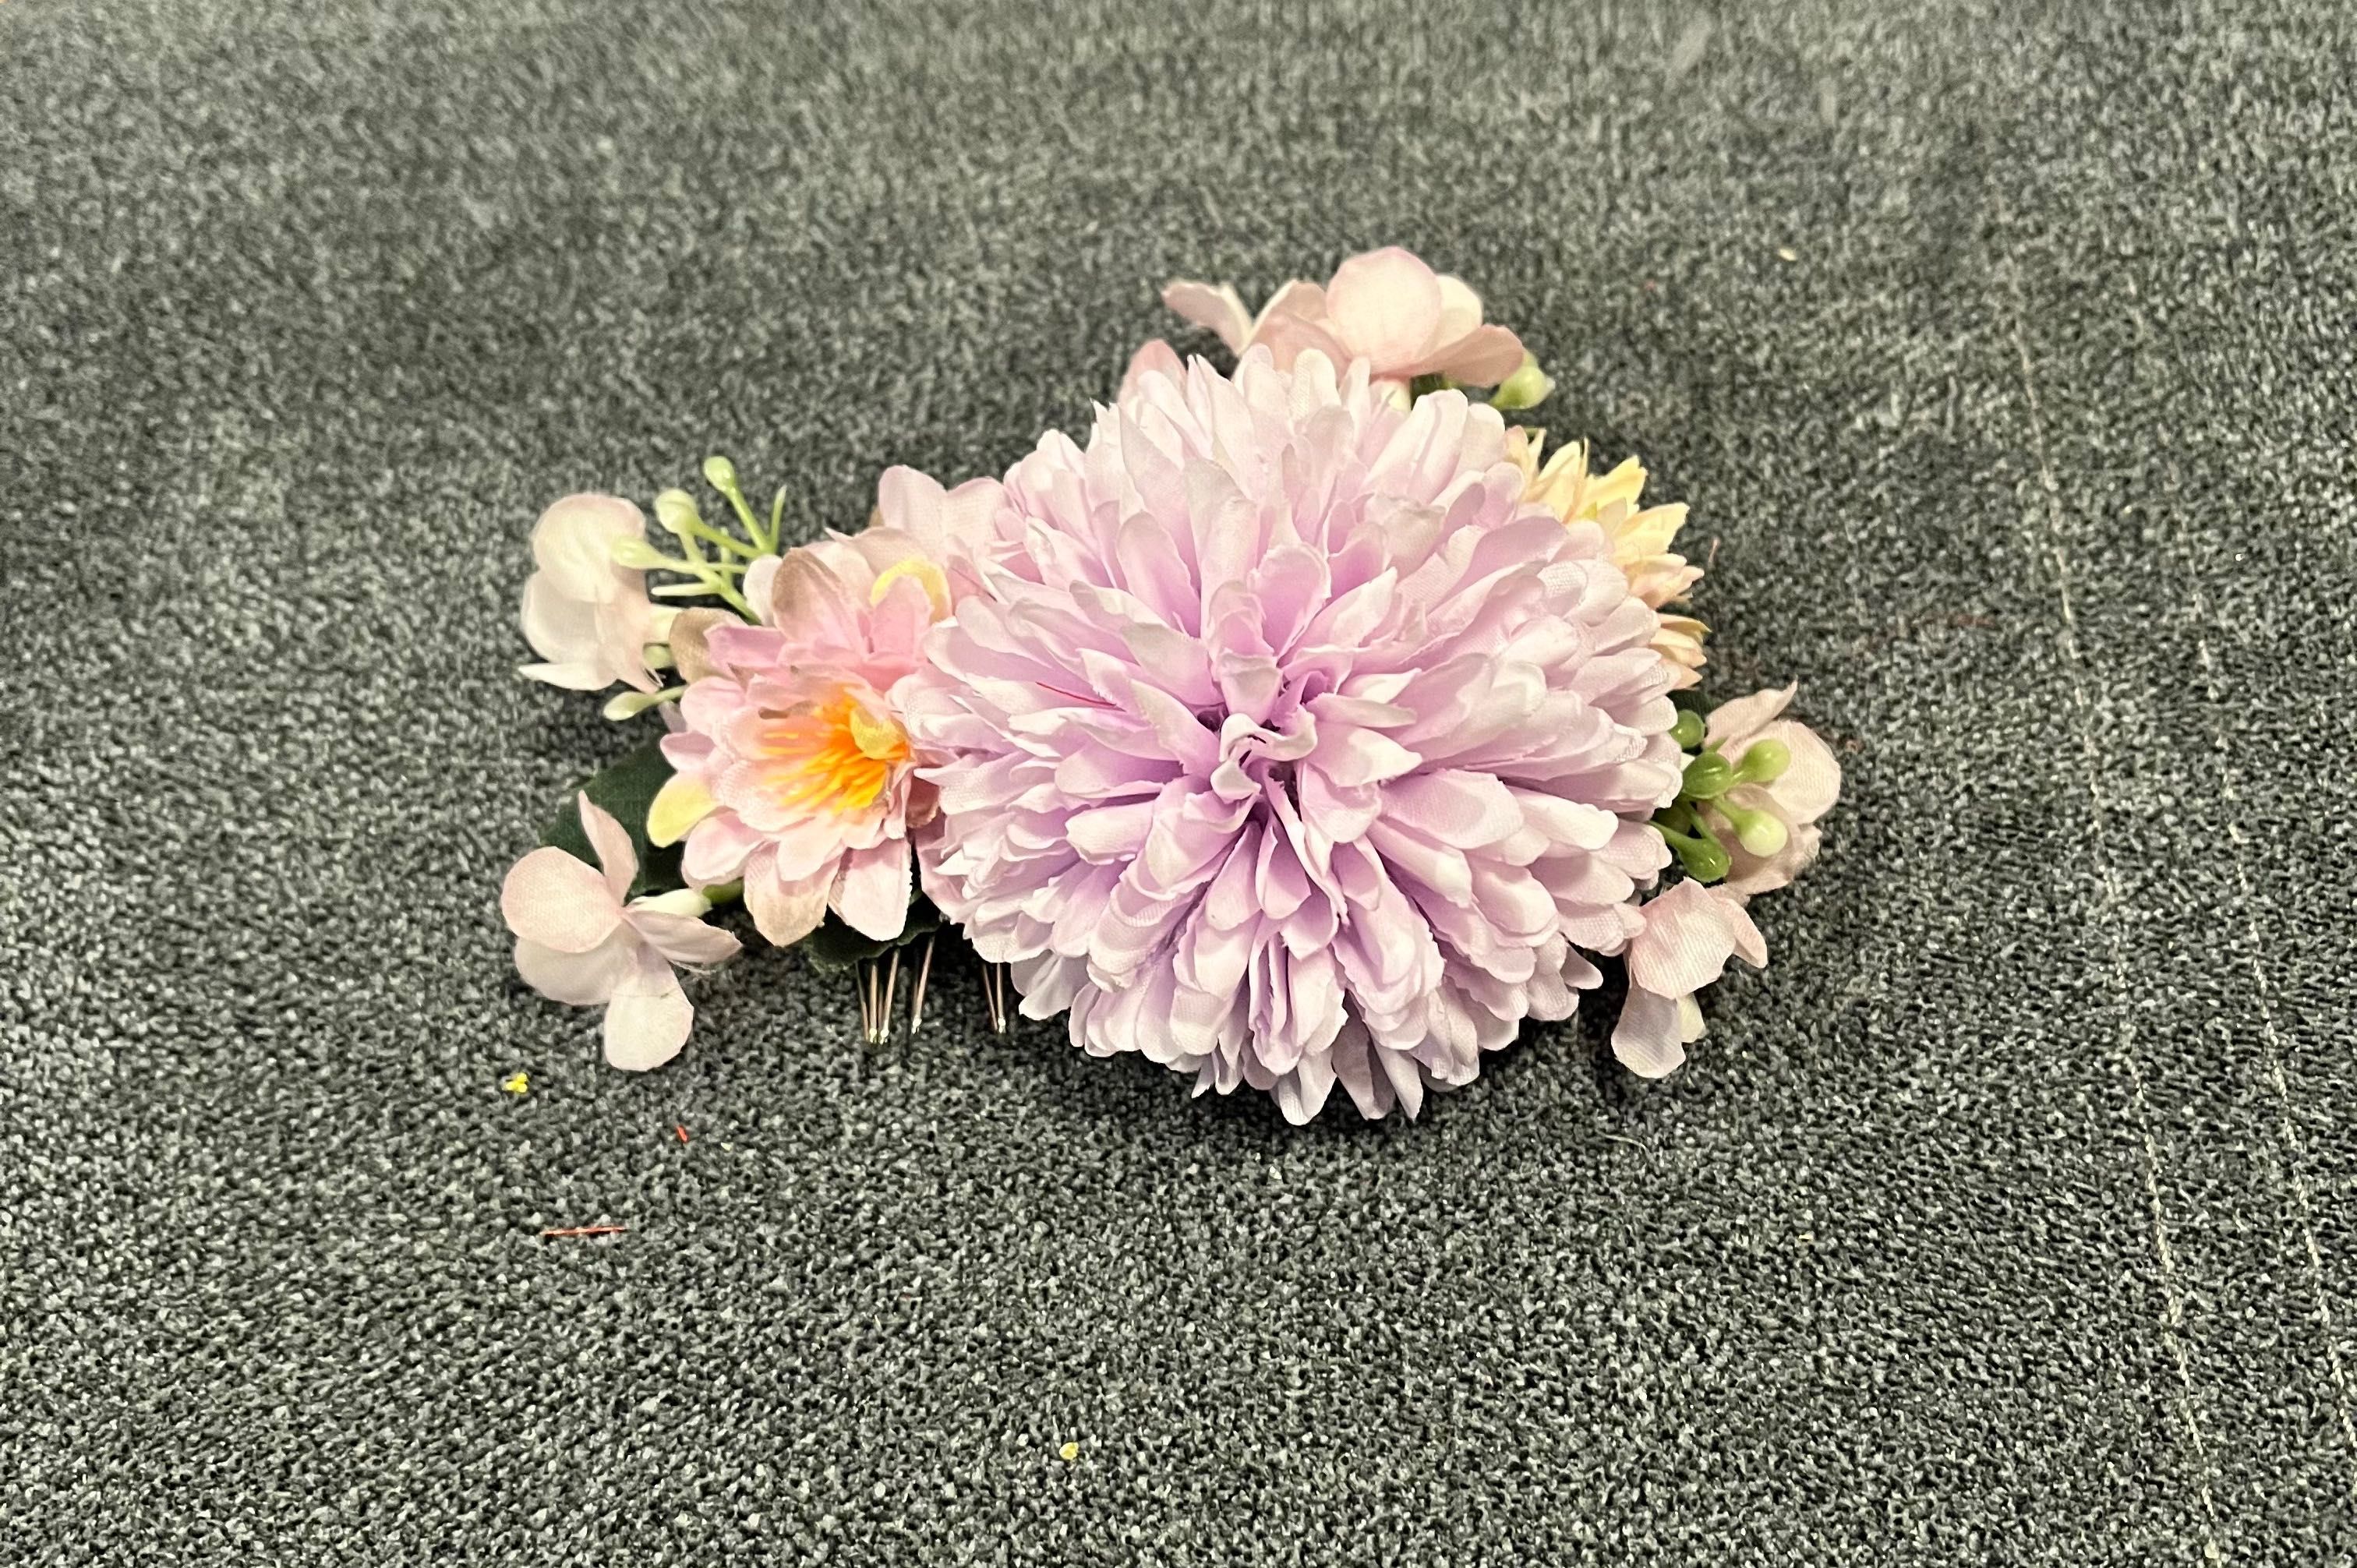 Fioletowa spinka grzebień kwiaty fioletowe pinup retro